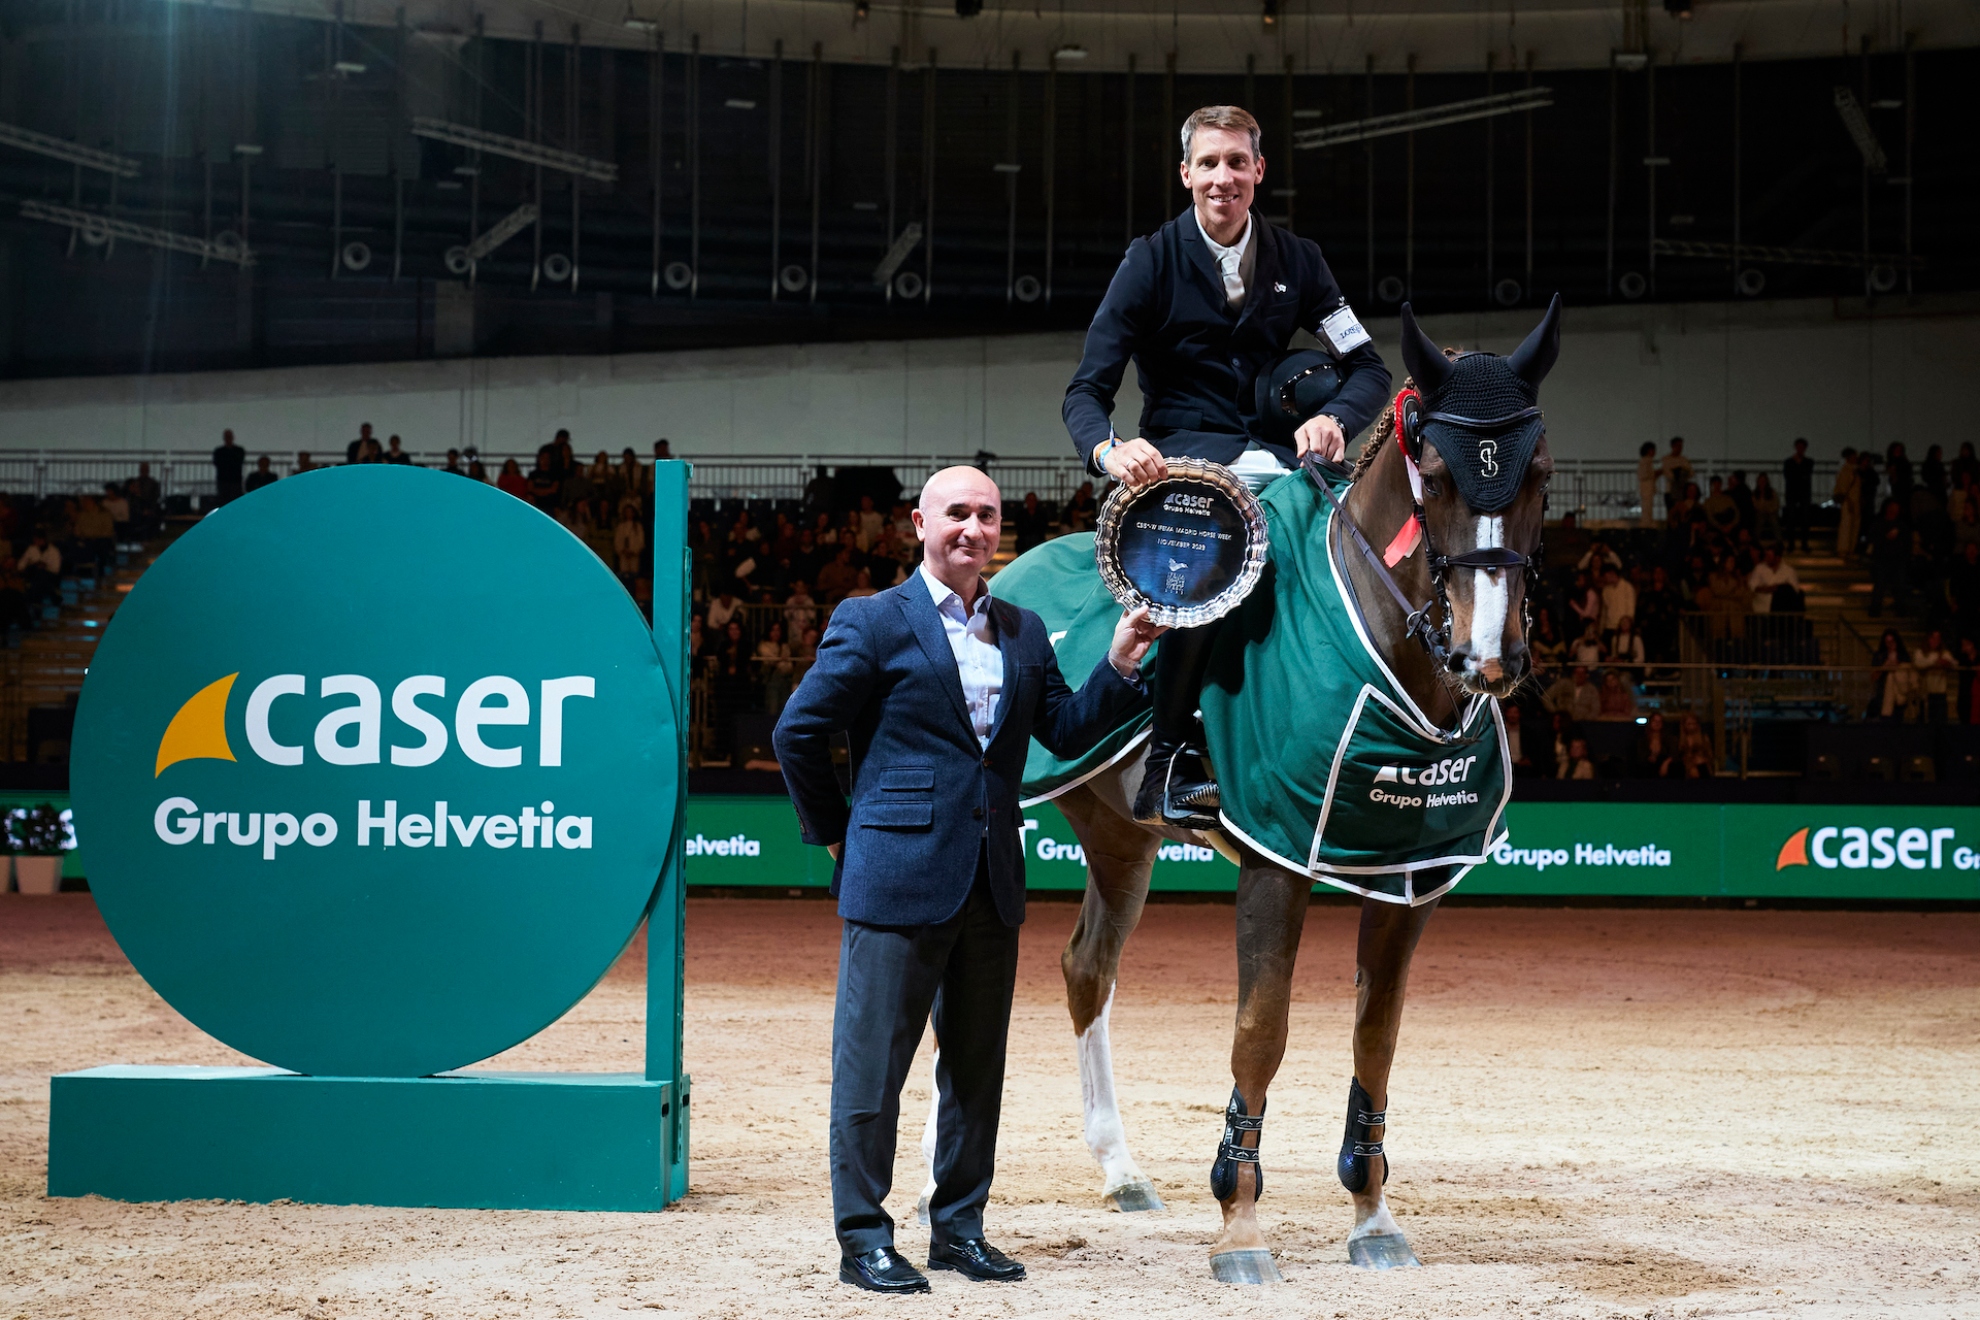 Henrik von Eckermann recibe el premio como ganador del Trofeo Caser Grupo Helvetia